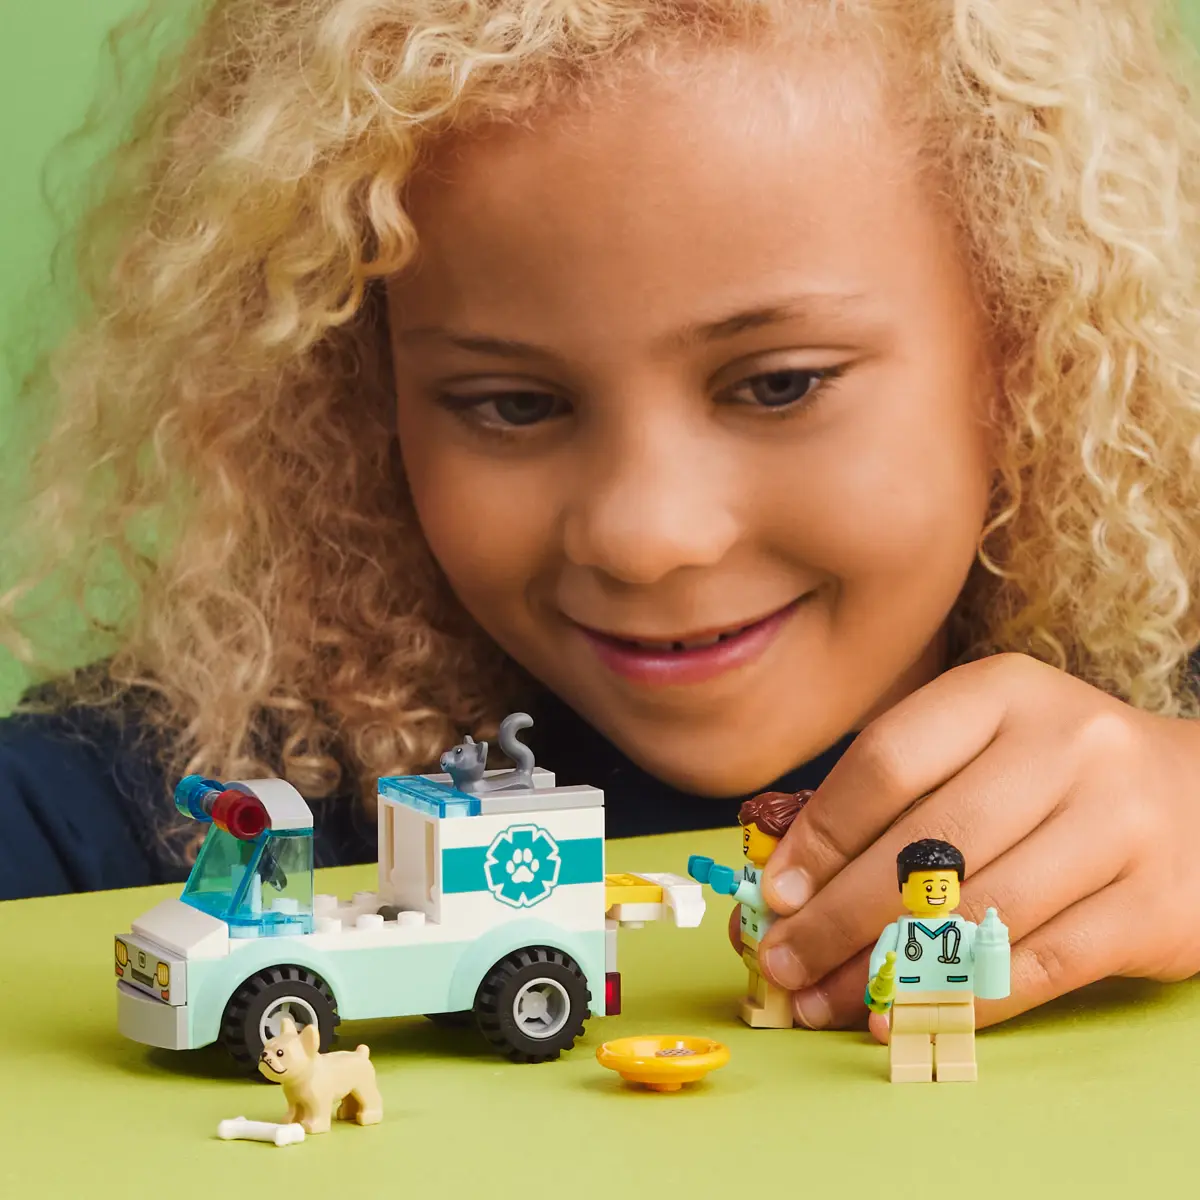 LEGO City Vet Van Rescue Building Toy Set, 58 Pieces, Multicolour, 4Y+